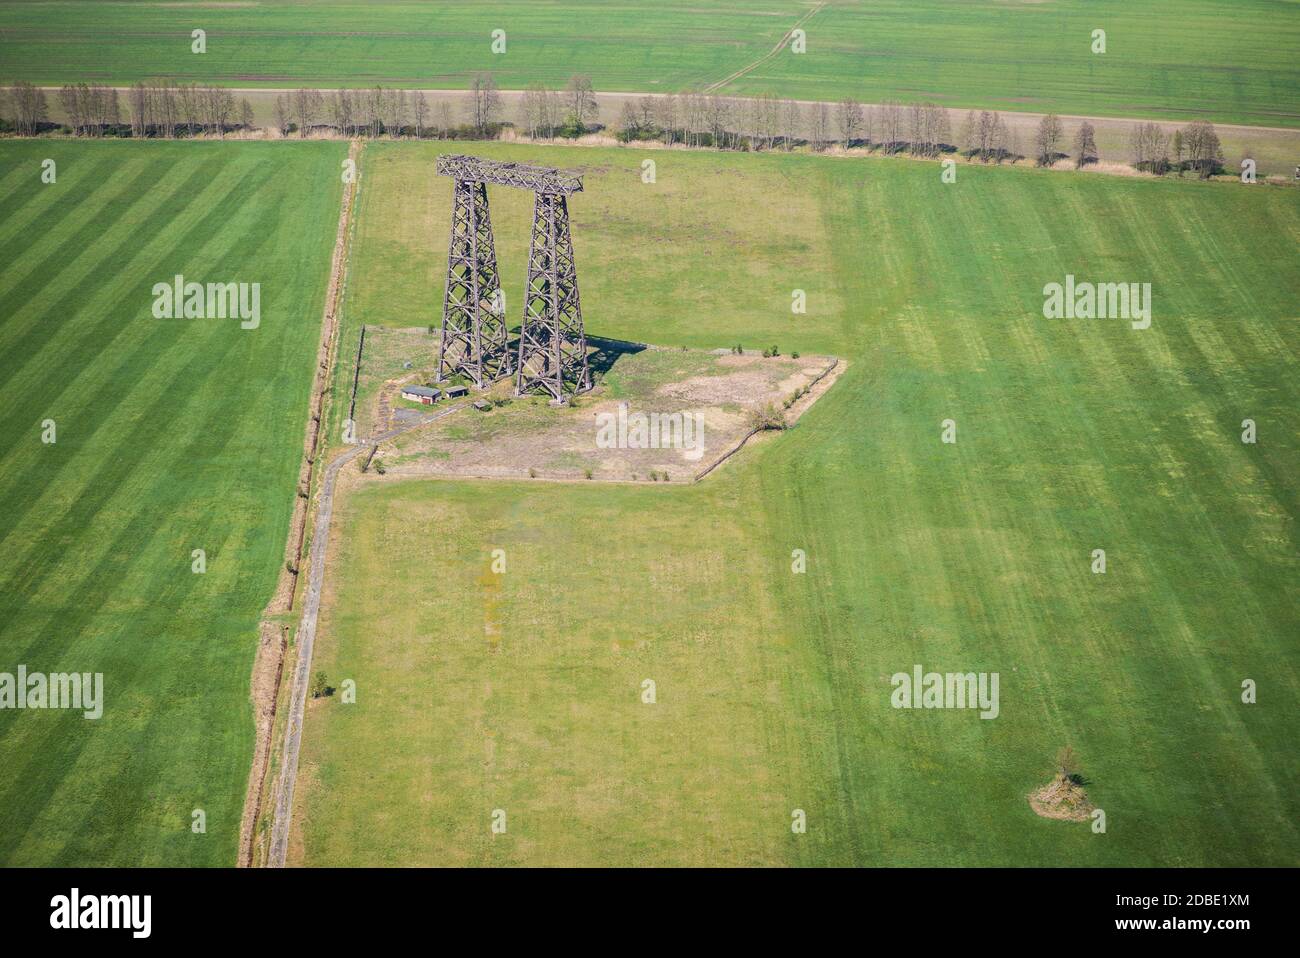 Sendeturm in Holzbauweise auf einer Wiese bei Brück in Deutschland - historisches Denkmal - Luftbild Stockfoto